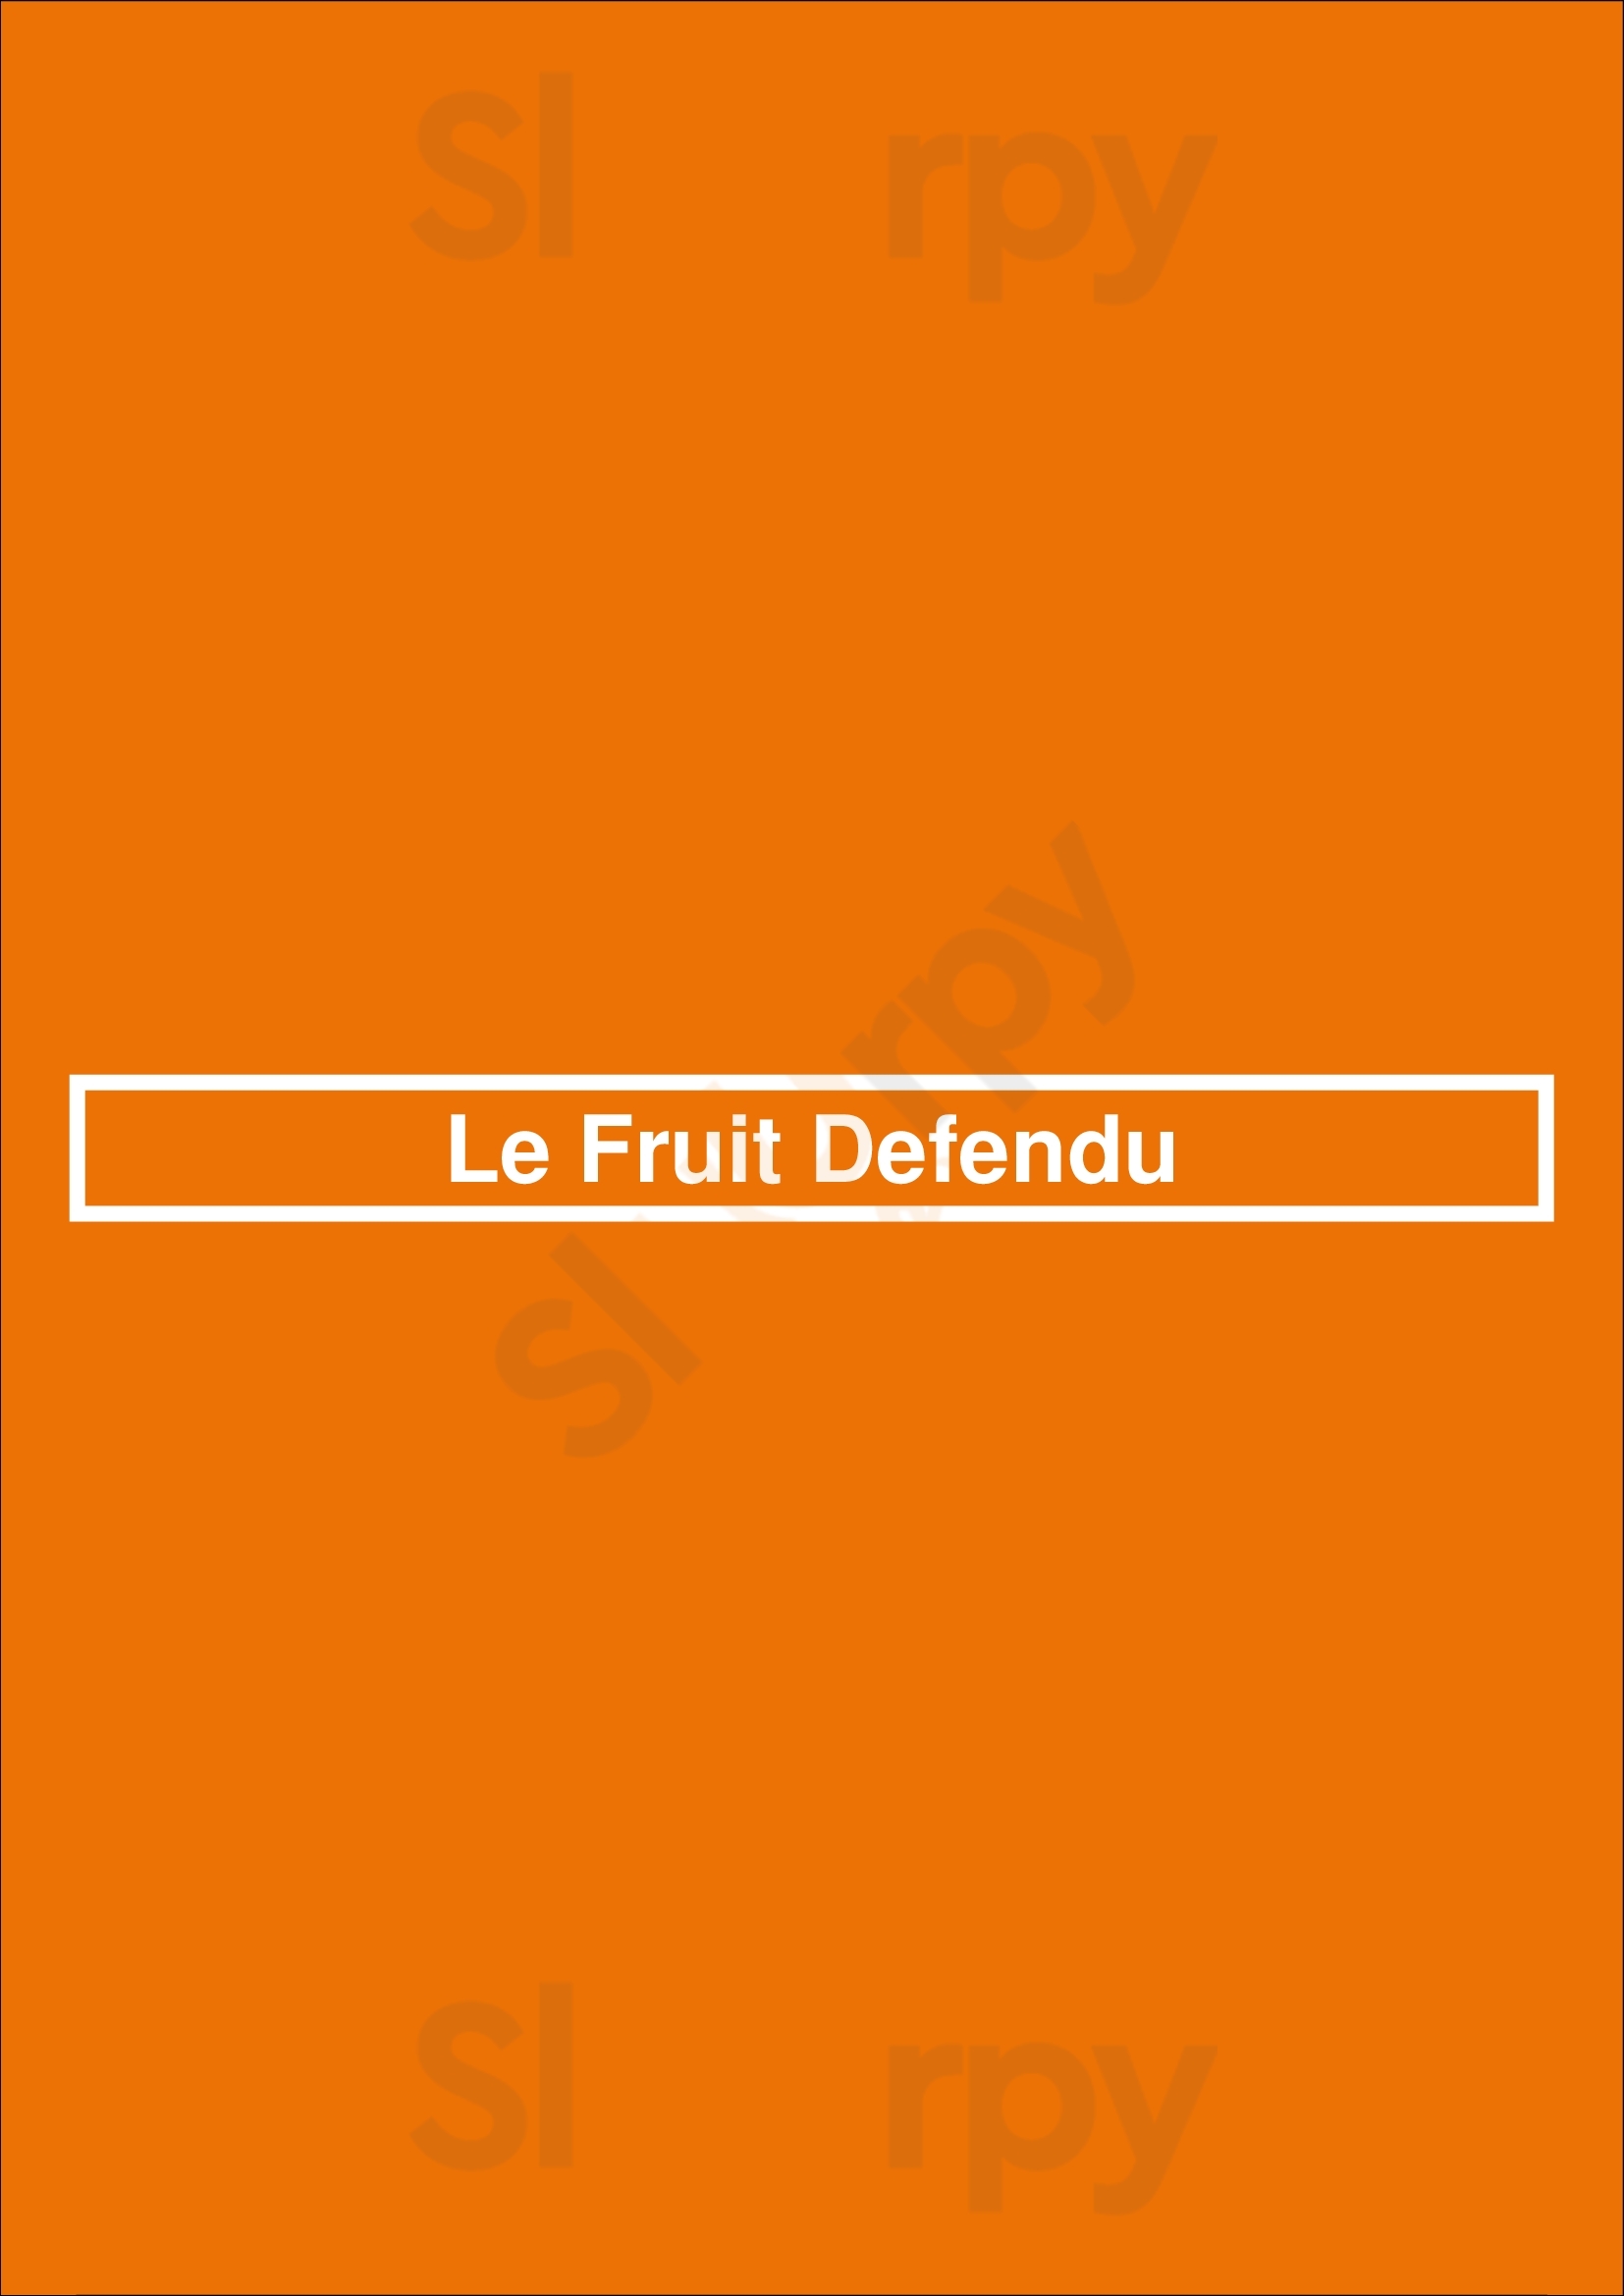 Le Fruit Defendu Ixelles Menu - 1